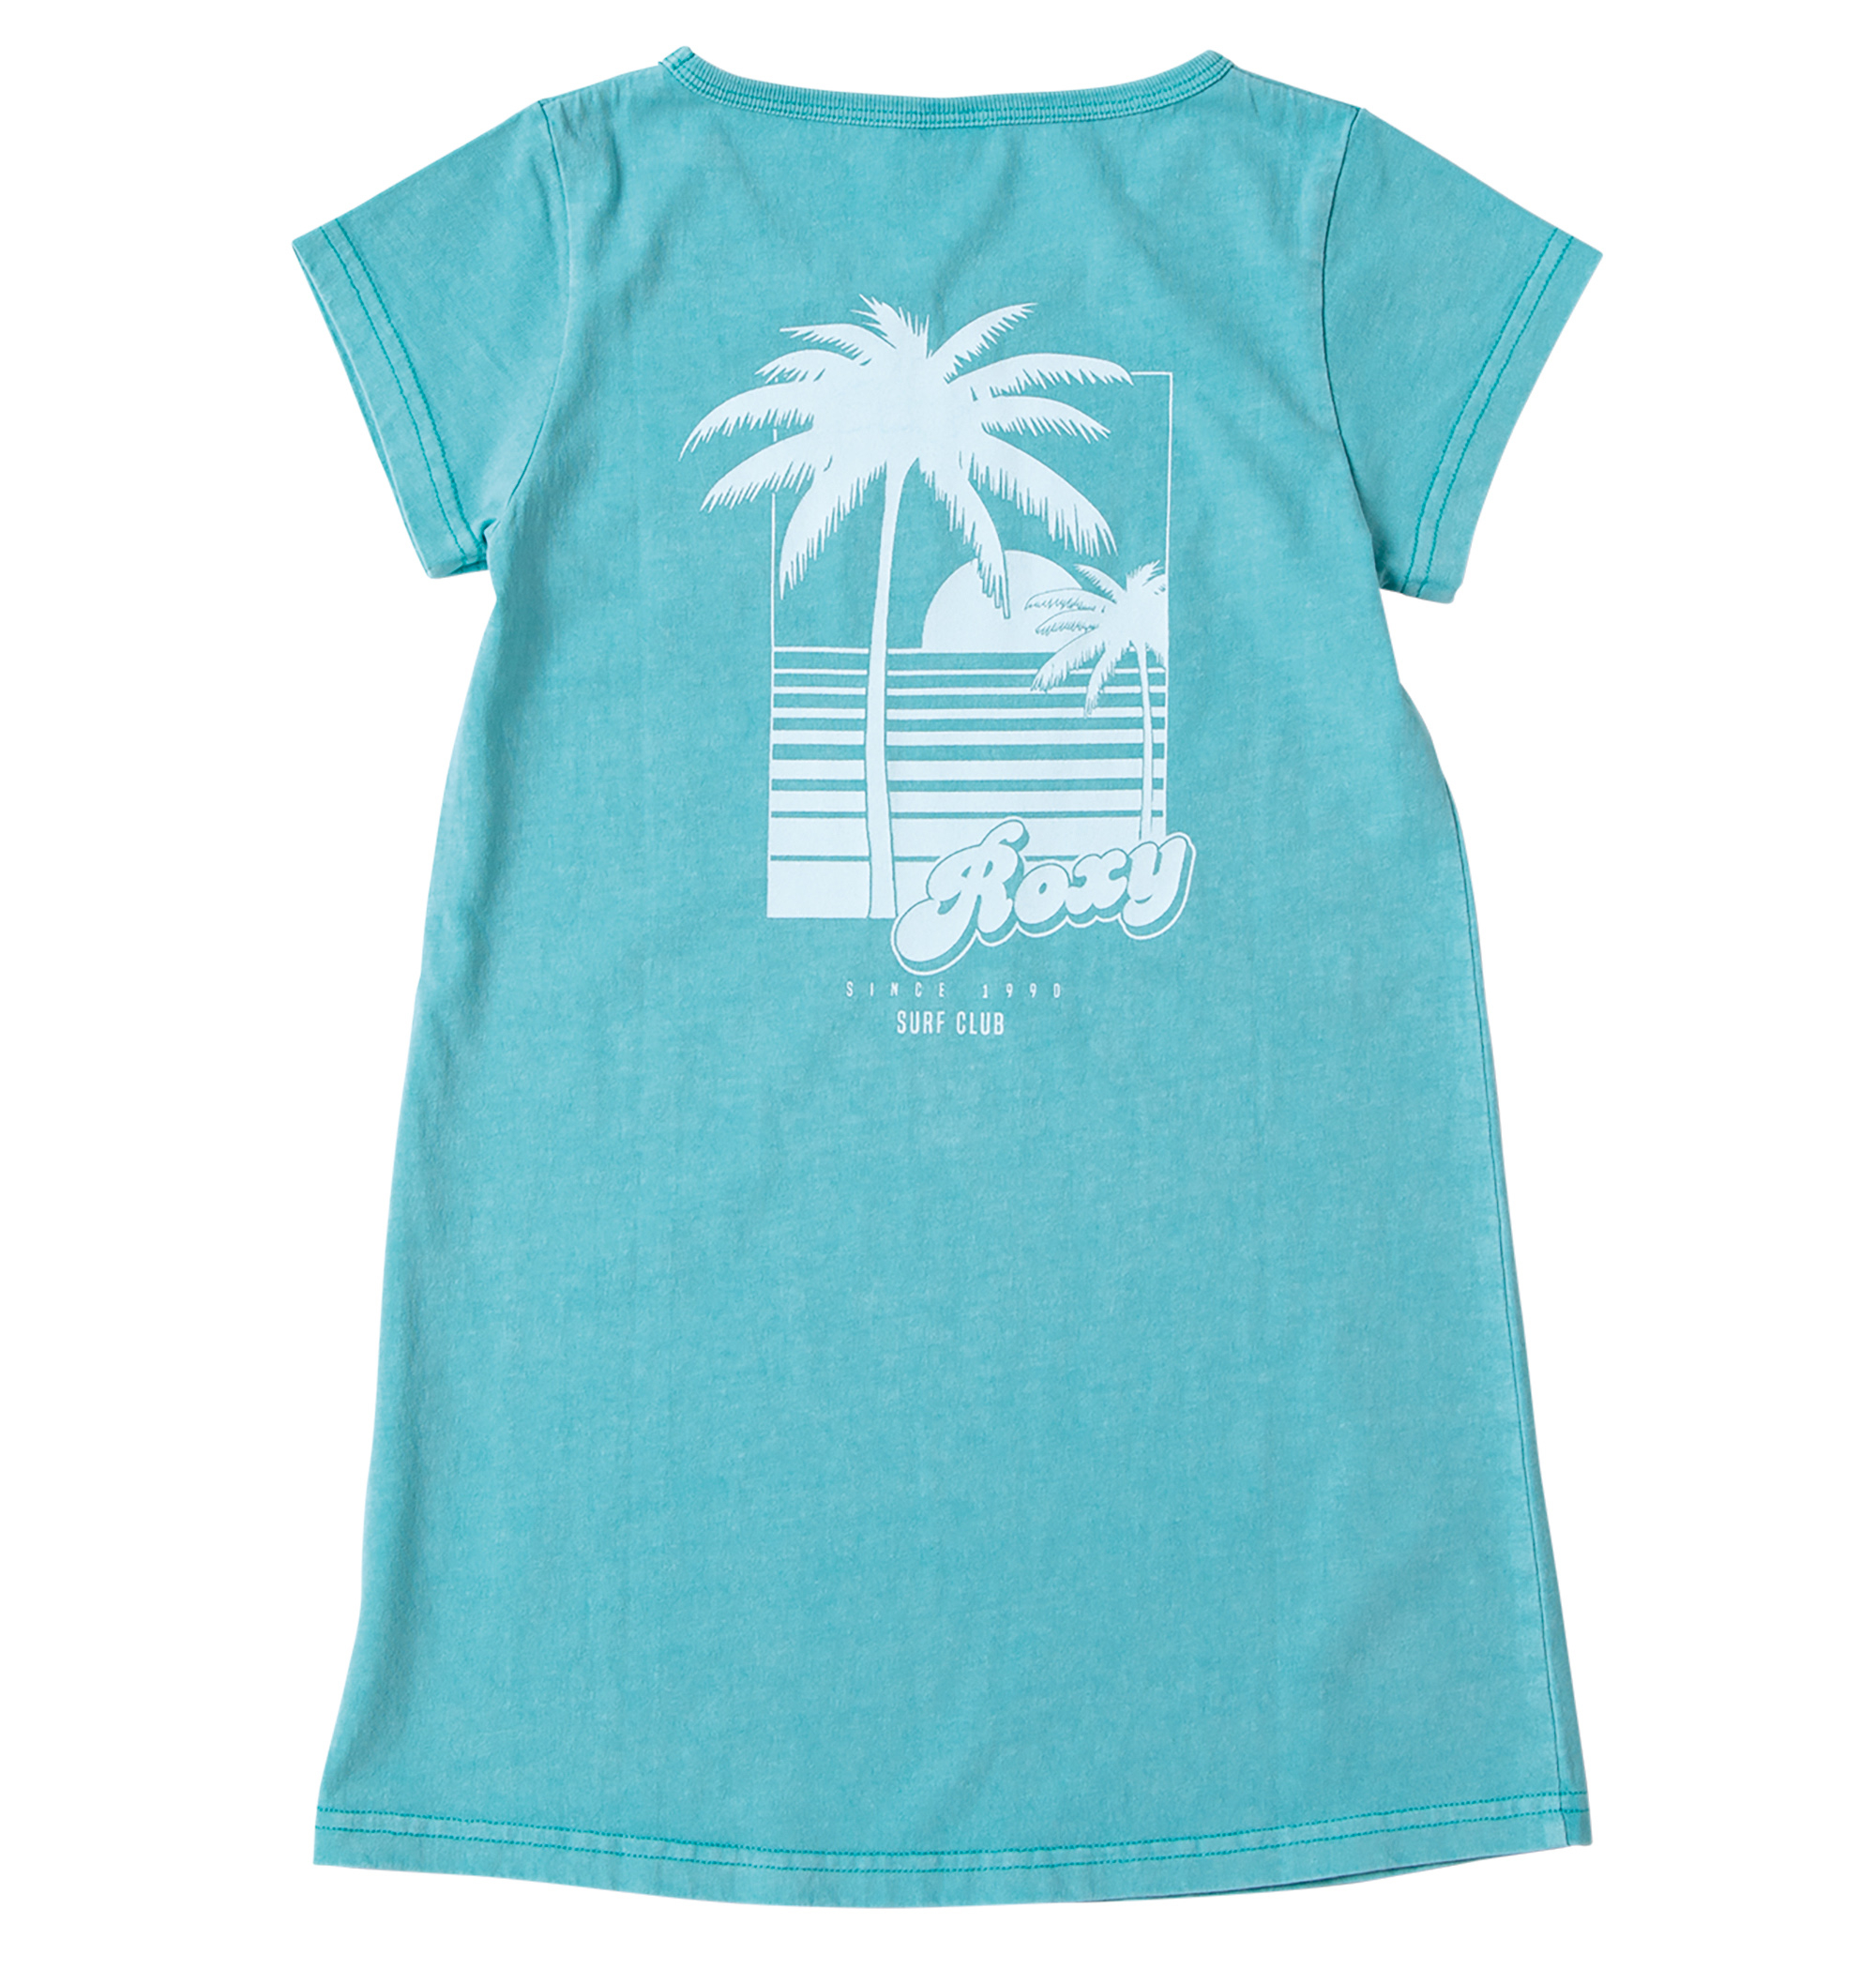 30%OFF！＜Roxy＞MINI SURF CLUB リゾート感漂うバックプリントがROXYらしいアクセントを創り出してくれるTシャツ